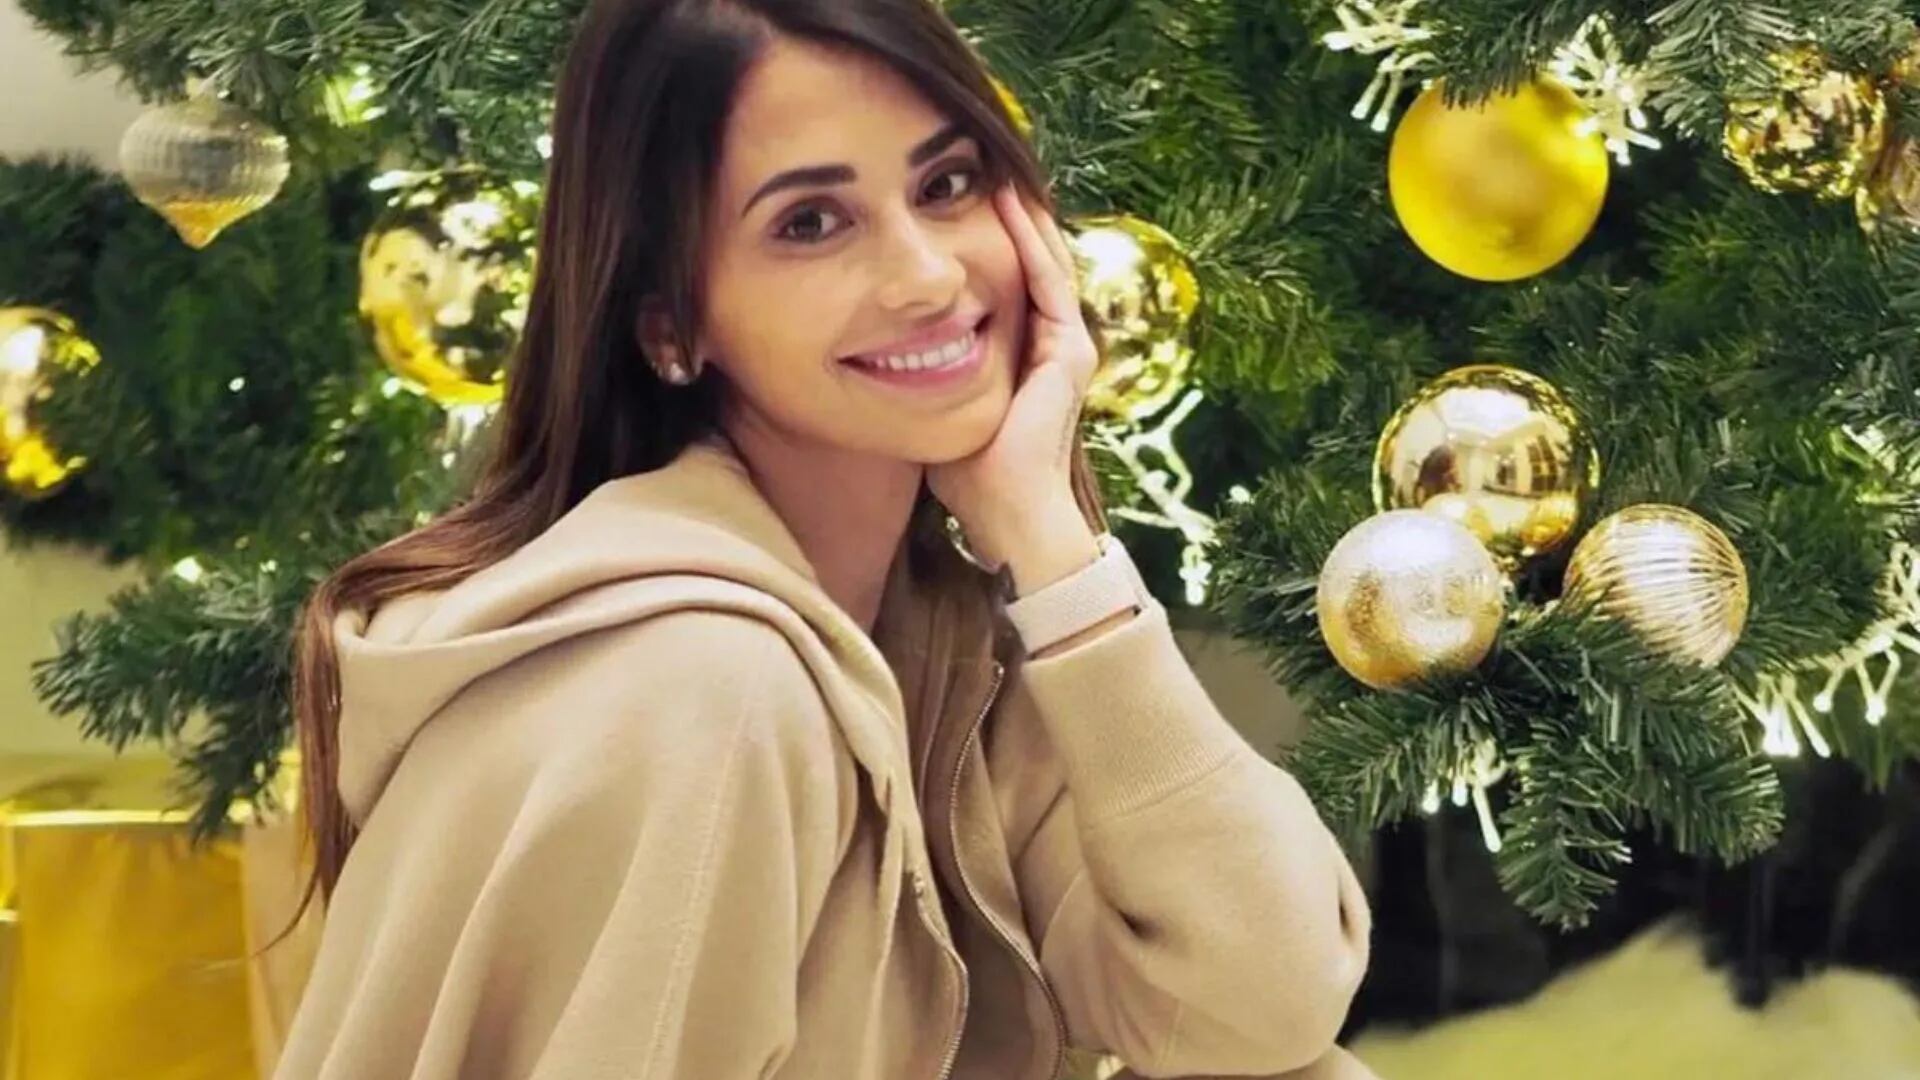 Antonela Roccuzzo armó el árbol de Navidad en Qatar y un detalle se robó toda la atención: “No dejar de soñar nunca”